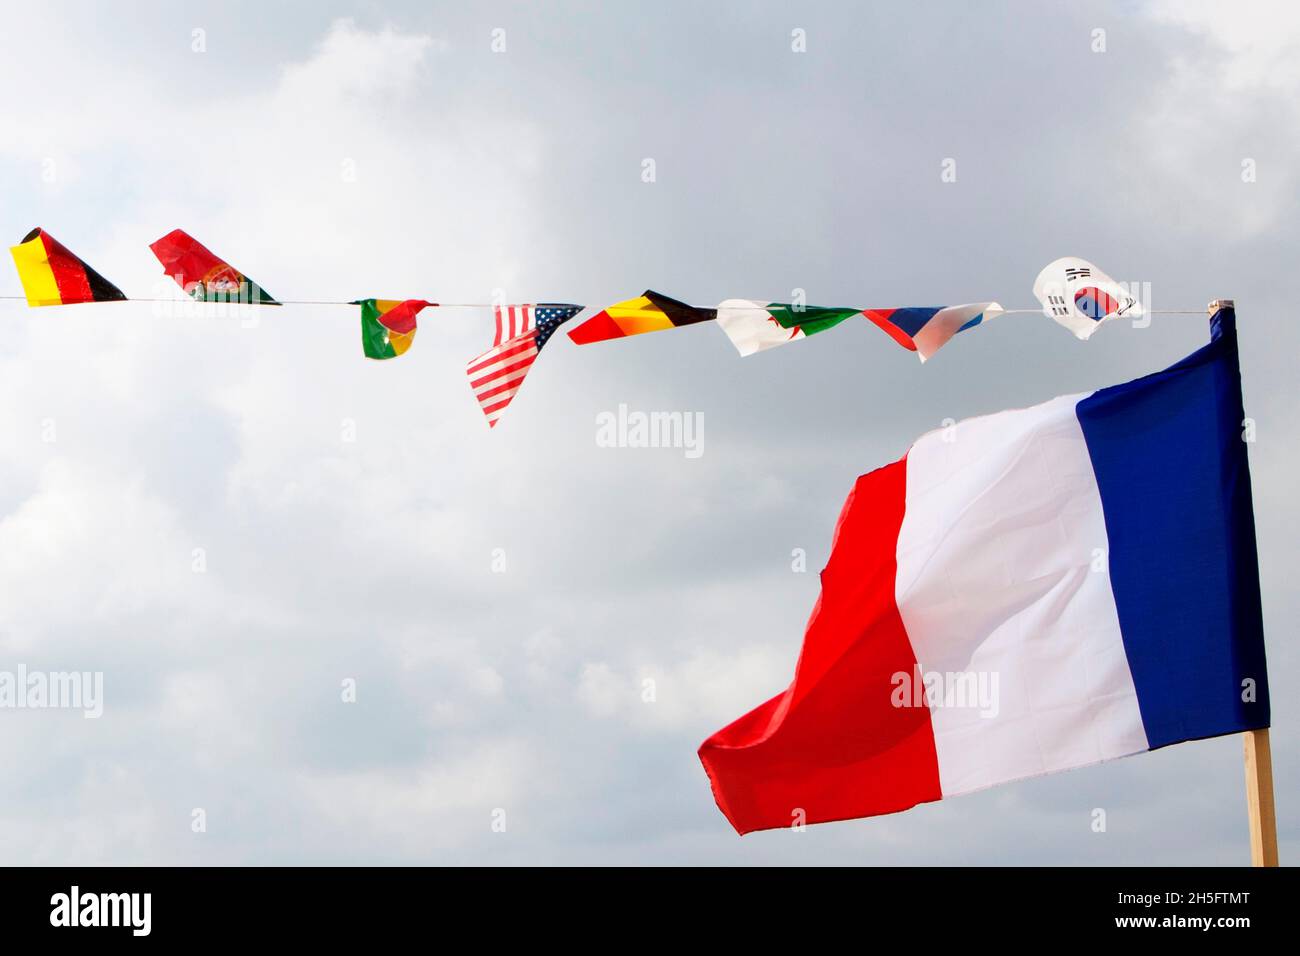 Französische Flagge im Vordergrund sowie weitere kleine Flaggen diverser Nationen wie USA, Deutschland, Südkorea, etc., Nizza, Frankreich. Stock Photo